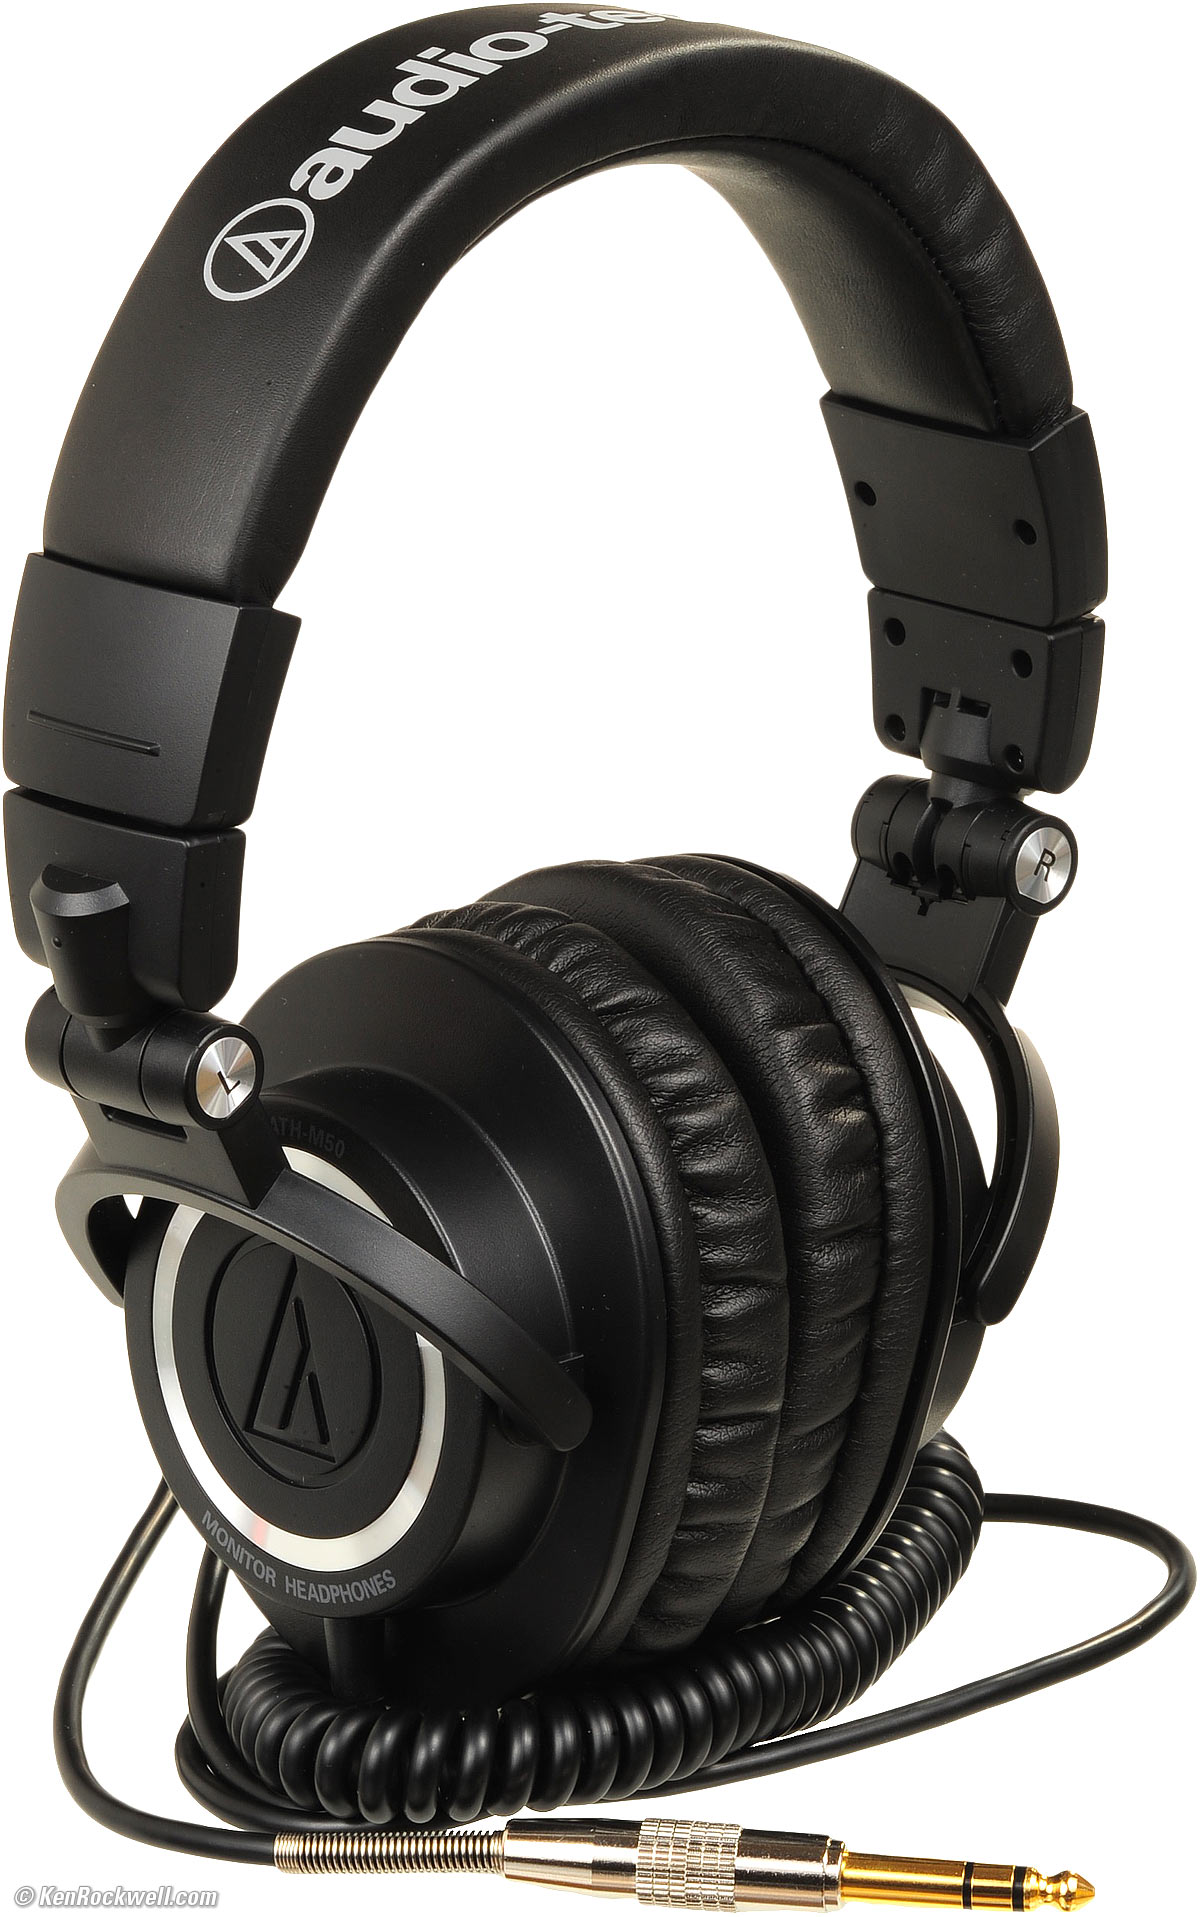 Audio-Technica ATH-M50 review: Audio-Technica ATH-M50 - CNET